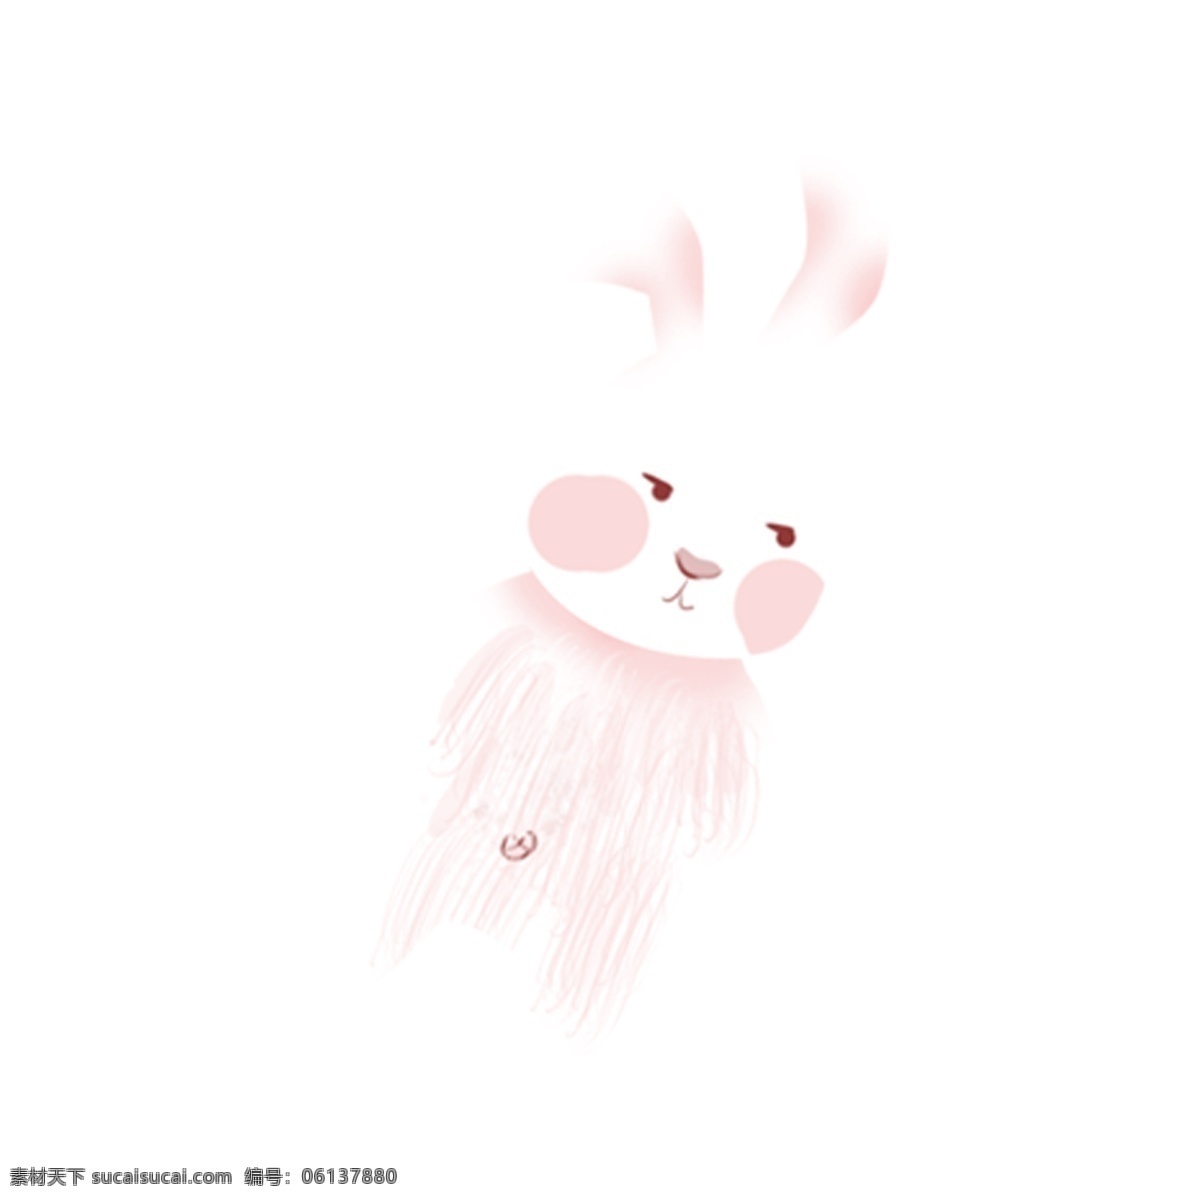 可爱 呆 萌 白色 小 兔子 动物 手绘 绘画 简约 创意 小清新 装饰 图案 水彩 插画